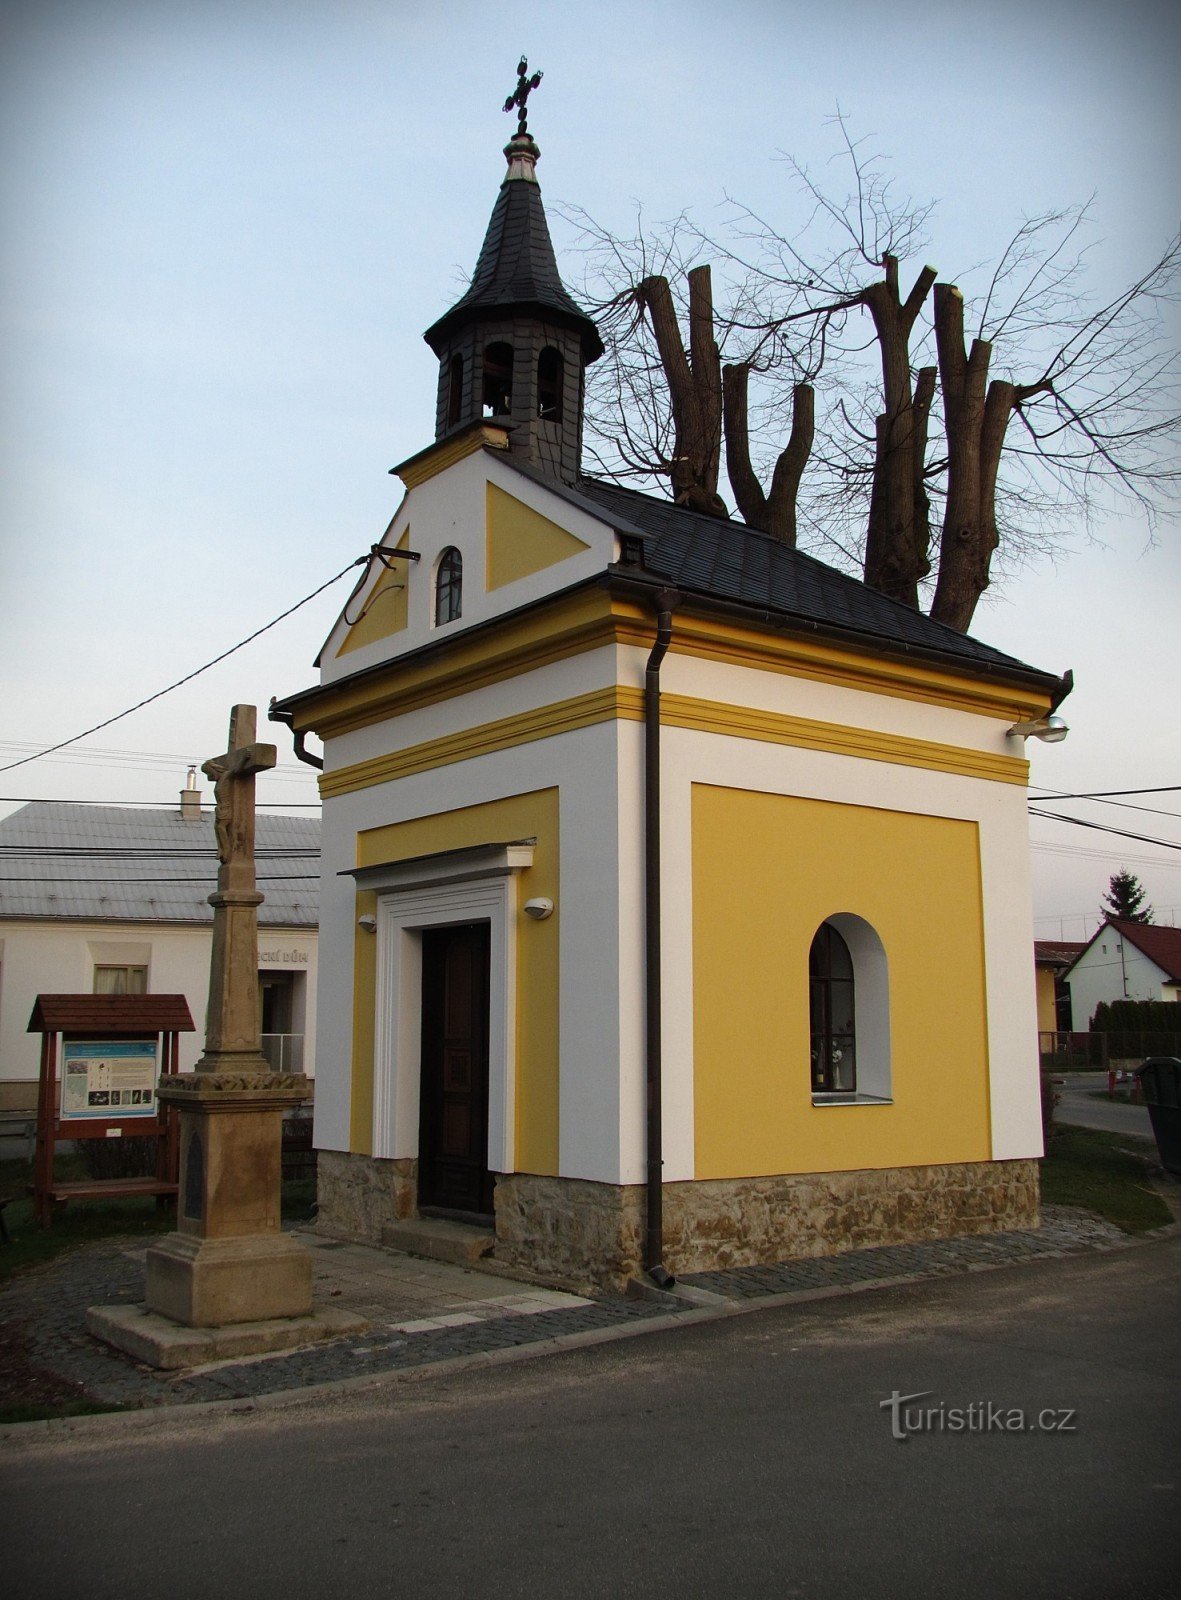 Луковечек - достопримечательности села